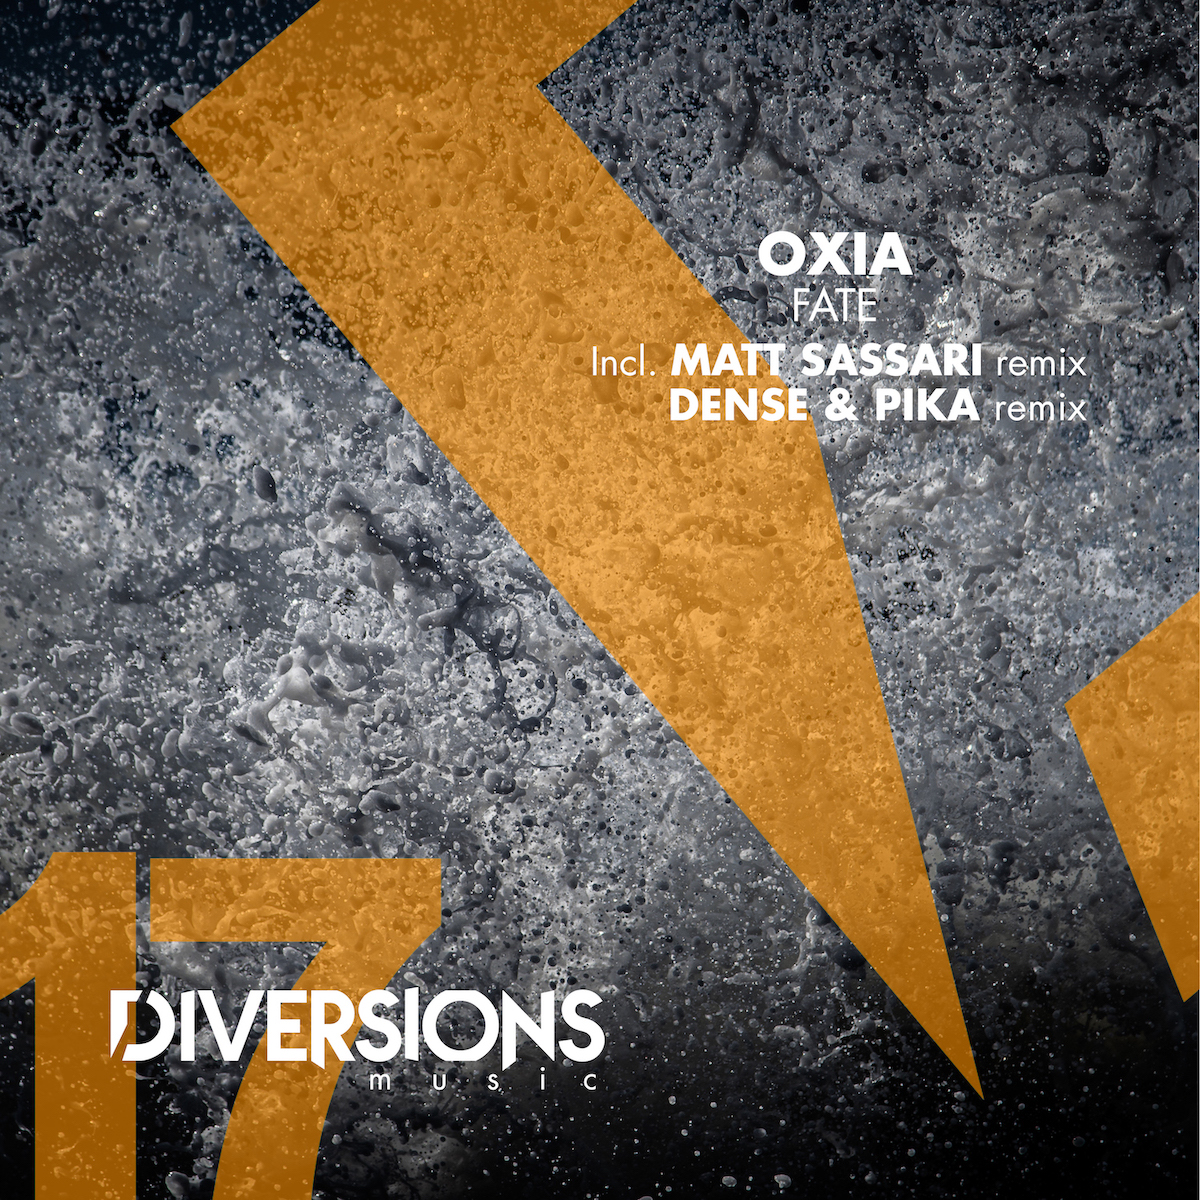 You are currently viewing OXIA revient sur son label Diversions Music avec un EP en trois parties, <em>Fate</em>, incluant des remixes de Dense & Pika et Matt Sassari